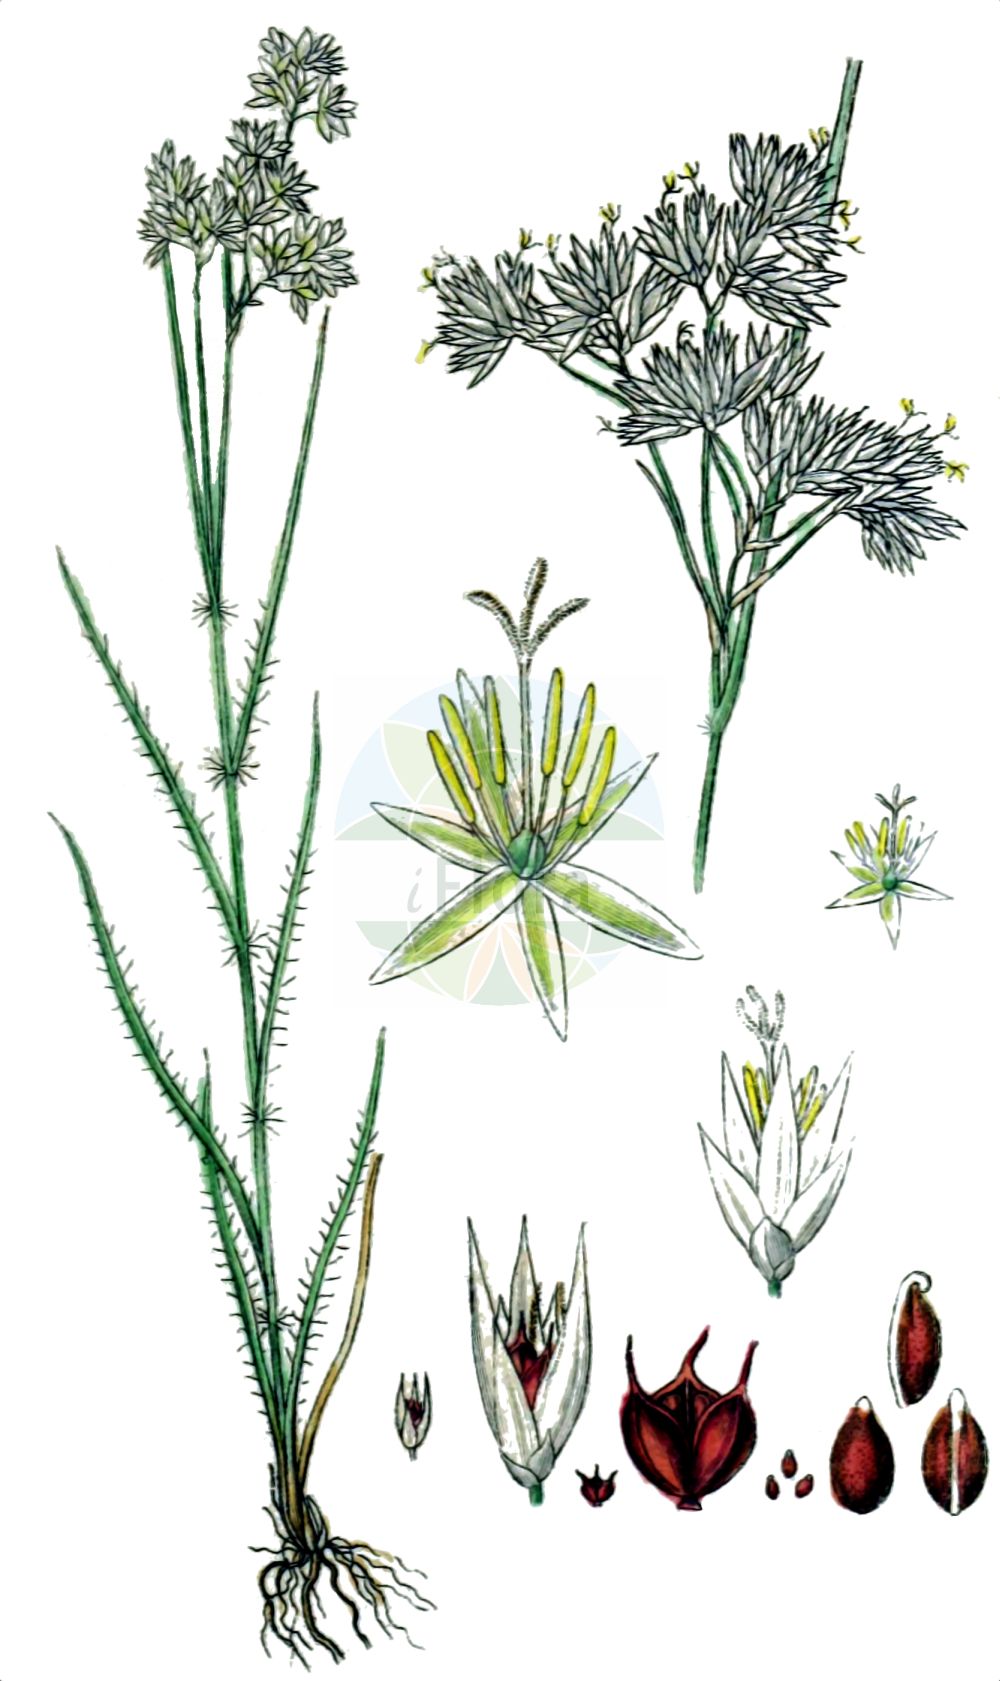 Historische Abbildung von Luzula nivea (Schnee-Hainsimse - Snow-white Wood-Rush). Das Bild zeigt Blatt, Bluete, Frucht und Same. ---- Historical Drawing of Luzula nivea (Schnee-Hainsimse - Snow-white Wood-Rush). The image is showing leaf, flower, fruit and seed.(Luzula nivea,Schnee-Hainsimse,Snow-white Wood-Rush,Juncoides nivea,Juncus niveus,Luzula nivea,Luzula nivea var. rubescens,Schnee-Hainsimse,Schneeweisse Hainsimse,Snow-white Wood-Rush,Snowy Woodrush,Lesser Wood-rush,Luzula,Hainsimse,Wood-rush,Juncaceae,Binsengewächse,Rush family,Blatt,Bluete,Frucht,Same,leaf,flower,fruit,seed,Sturm (1796f))